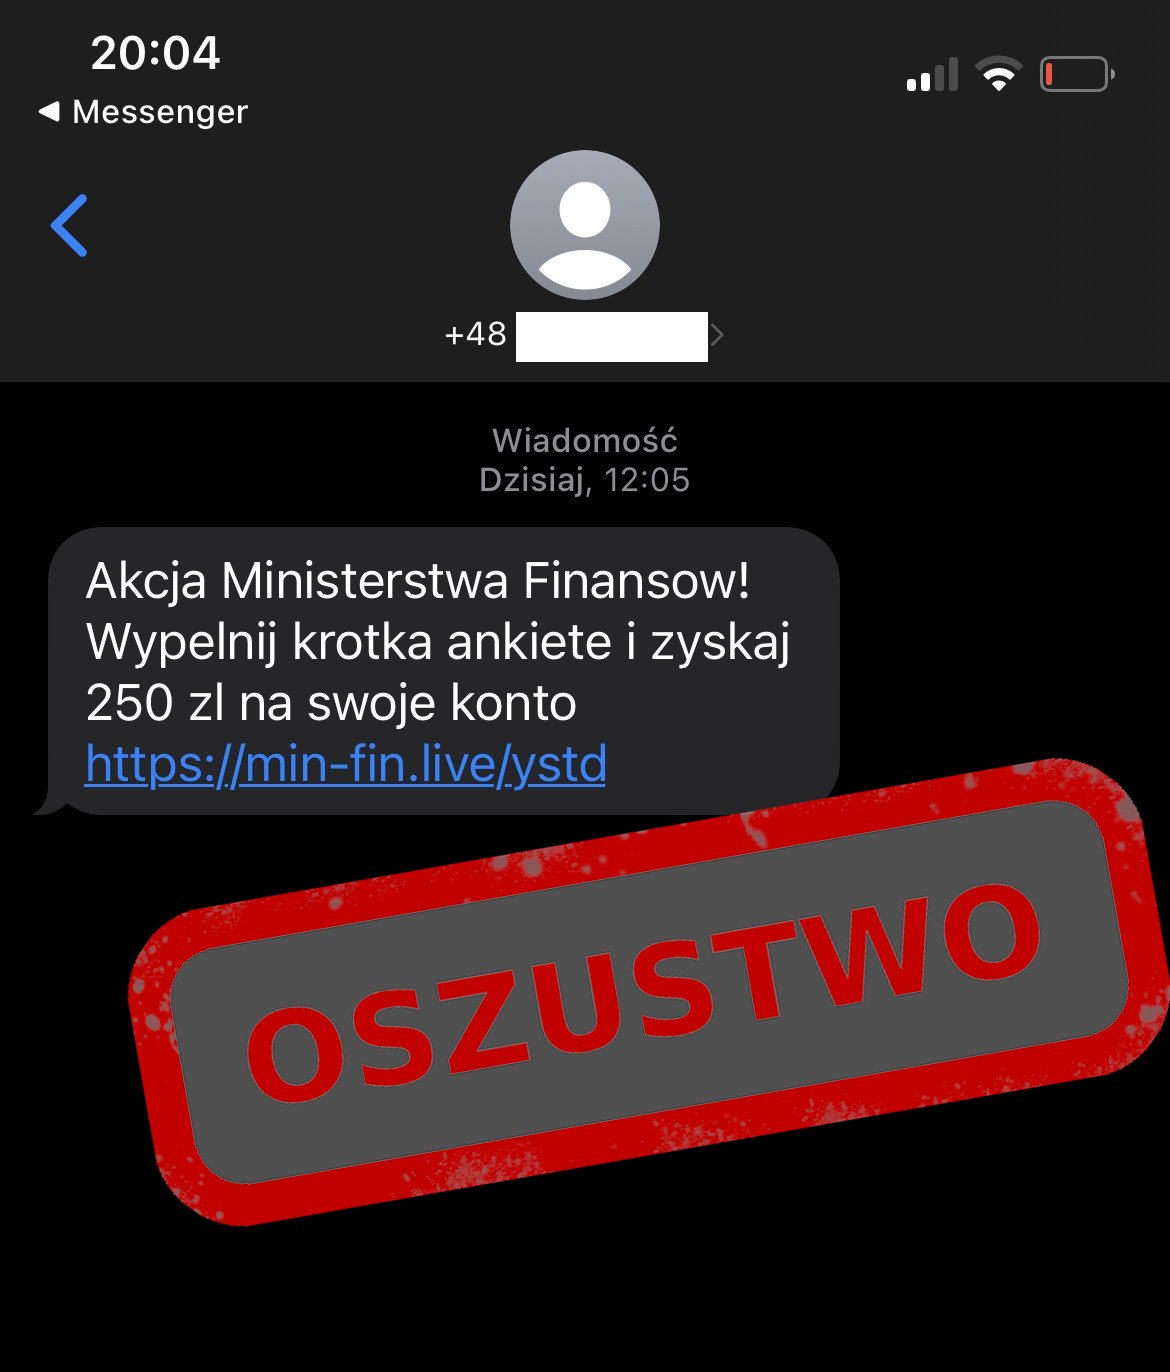 Tekst:akcja Ministra Finansów! Wyepłnij krotka ankiete i zyskaj 250 zł na swoje konto - przekierownie do fałszyfego linku